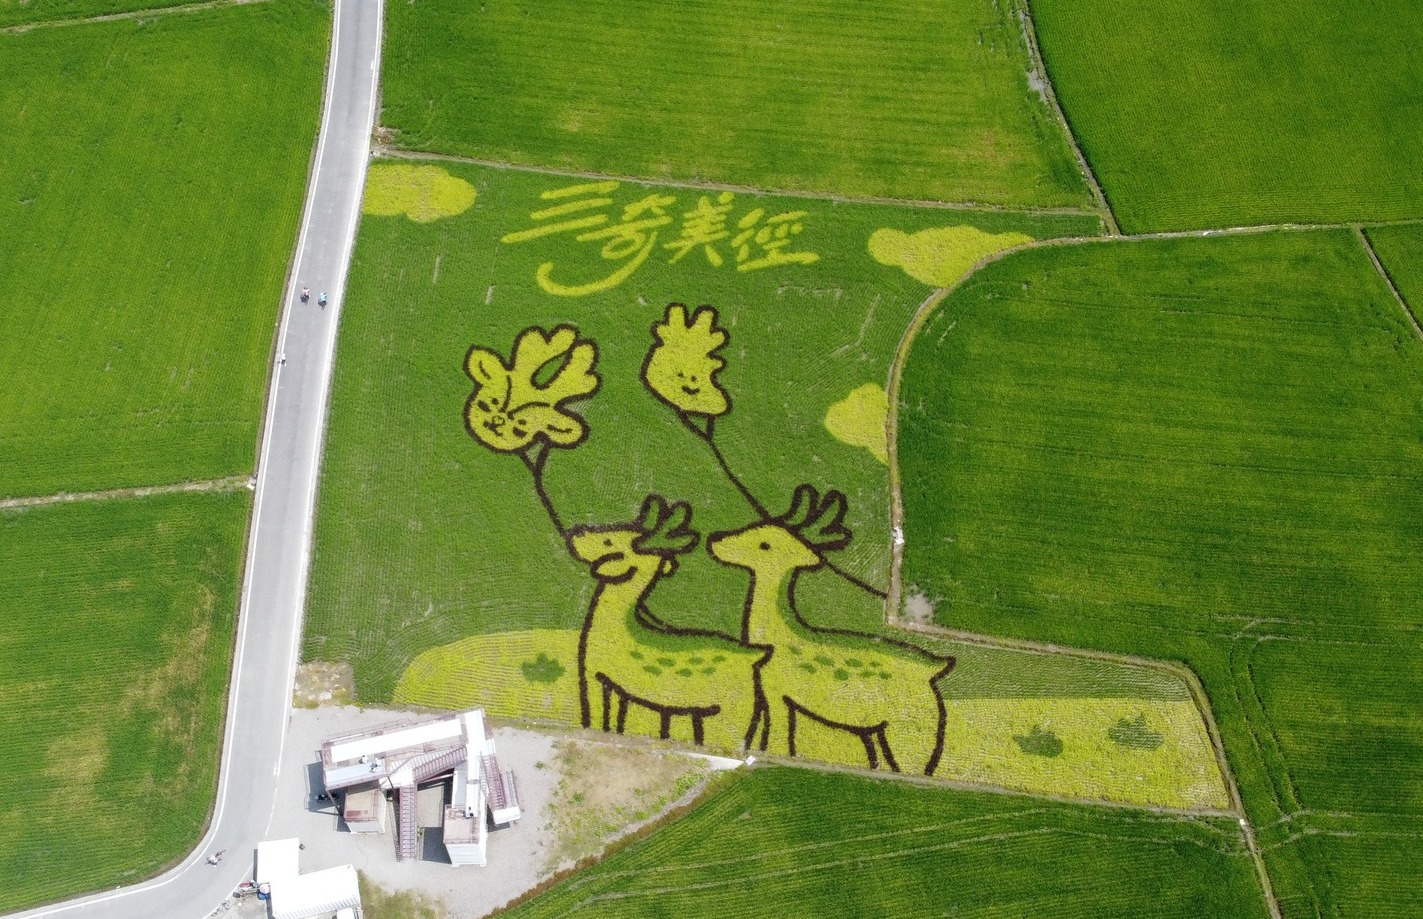 Cánh đồng lúa hình 2 chú hươu đẹp như tranh vẽ được người dân trồng và chăm sóc tỉ mỉ dọc hai bên đường Sanqimei. (Ảnh: Lấy từ Facebook “幸福冬山”)